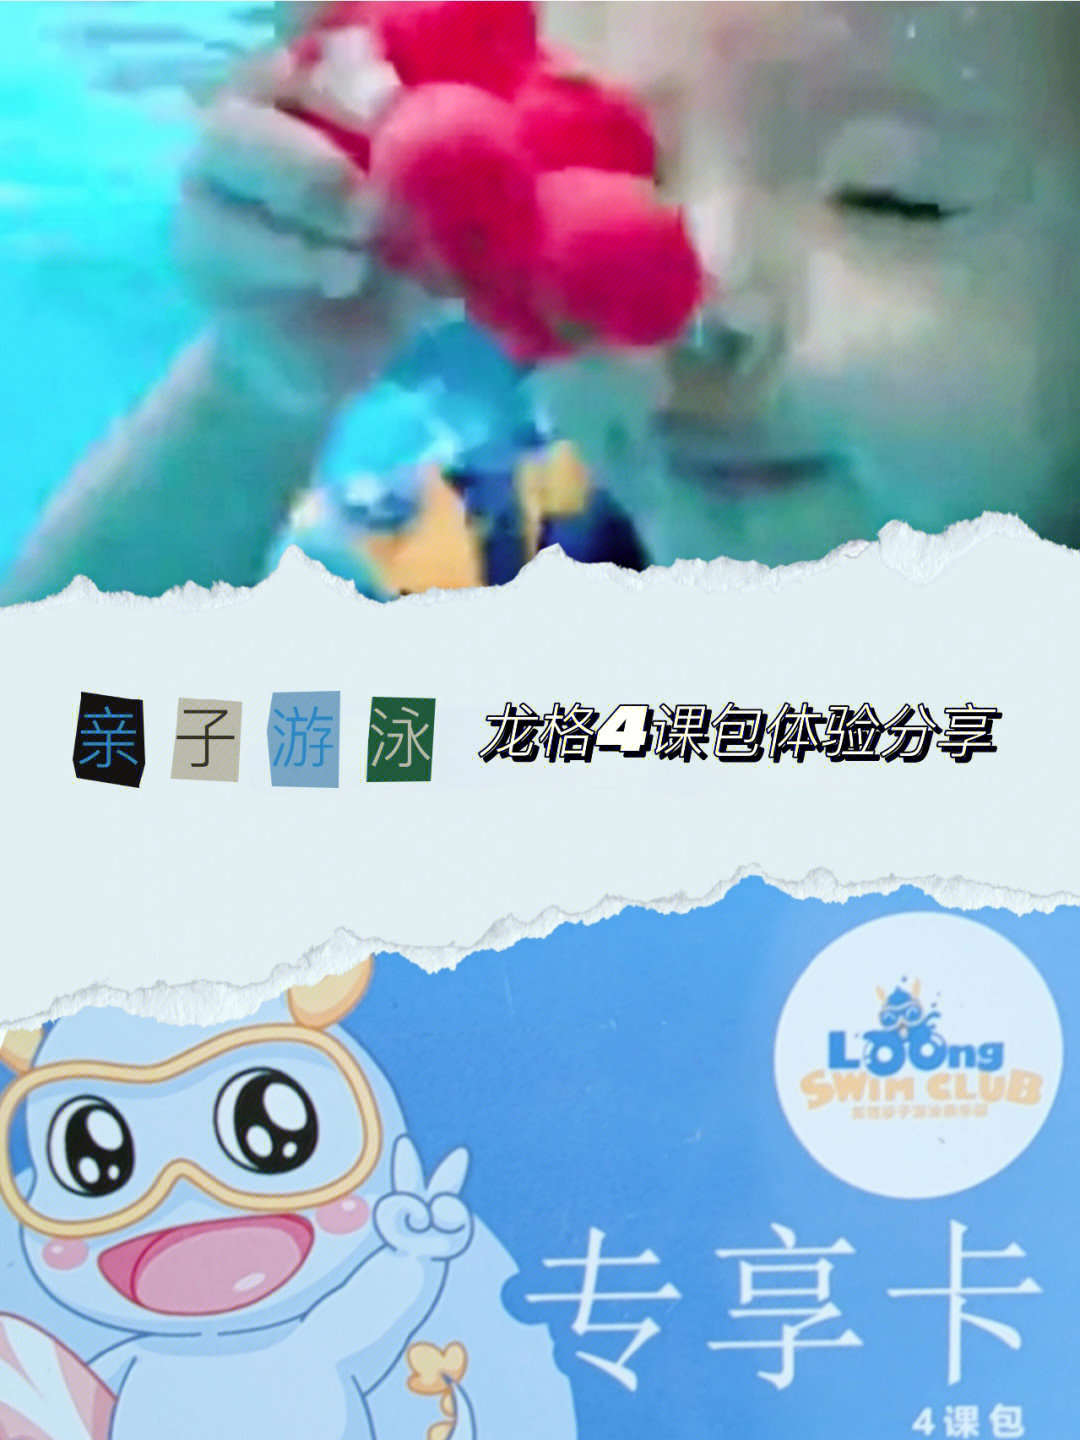 龙格亲子游泳52节课图片